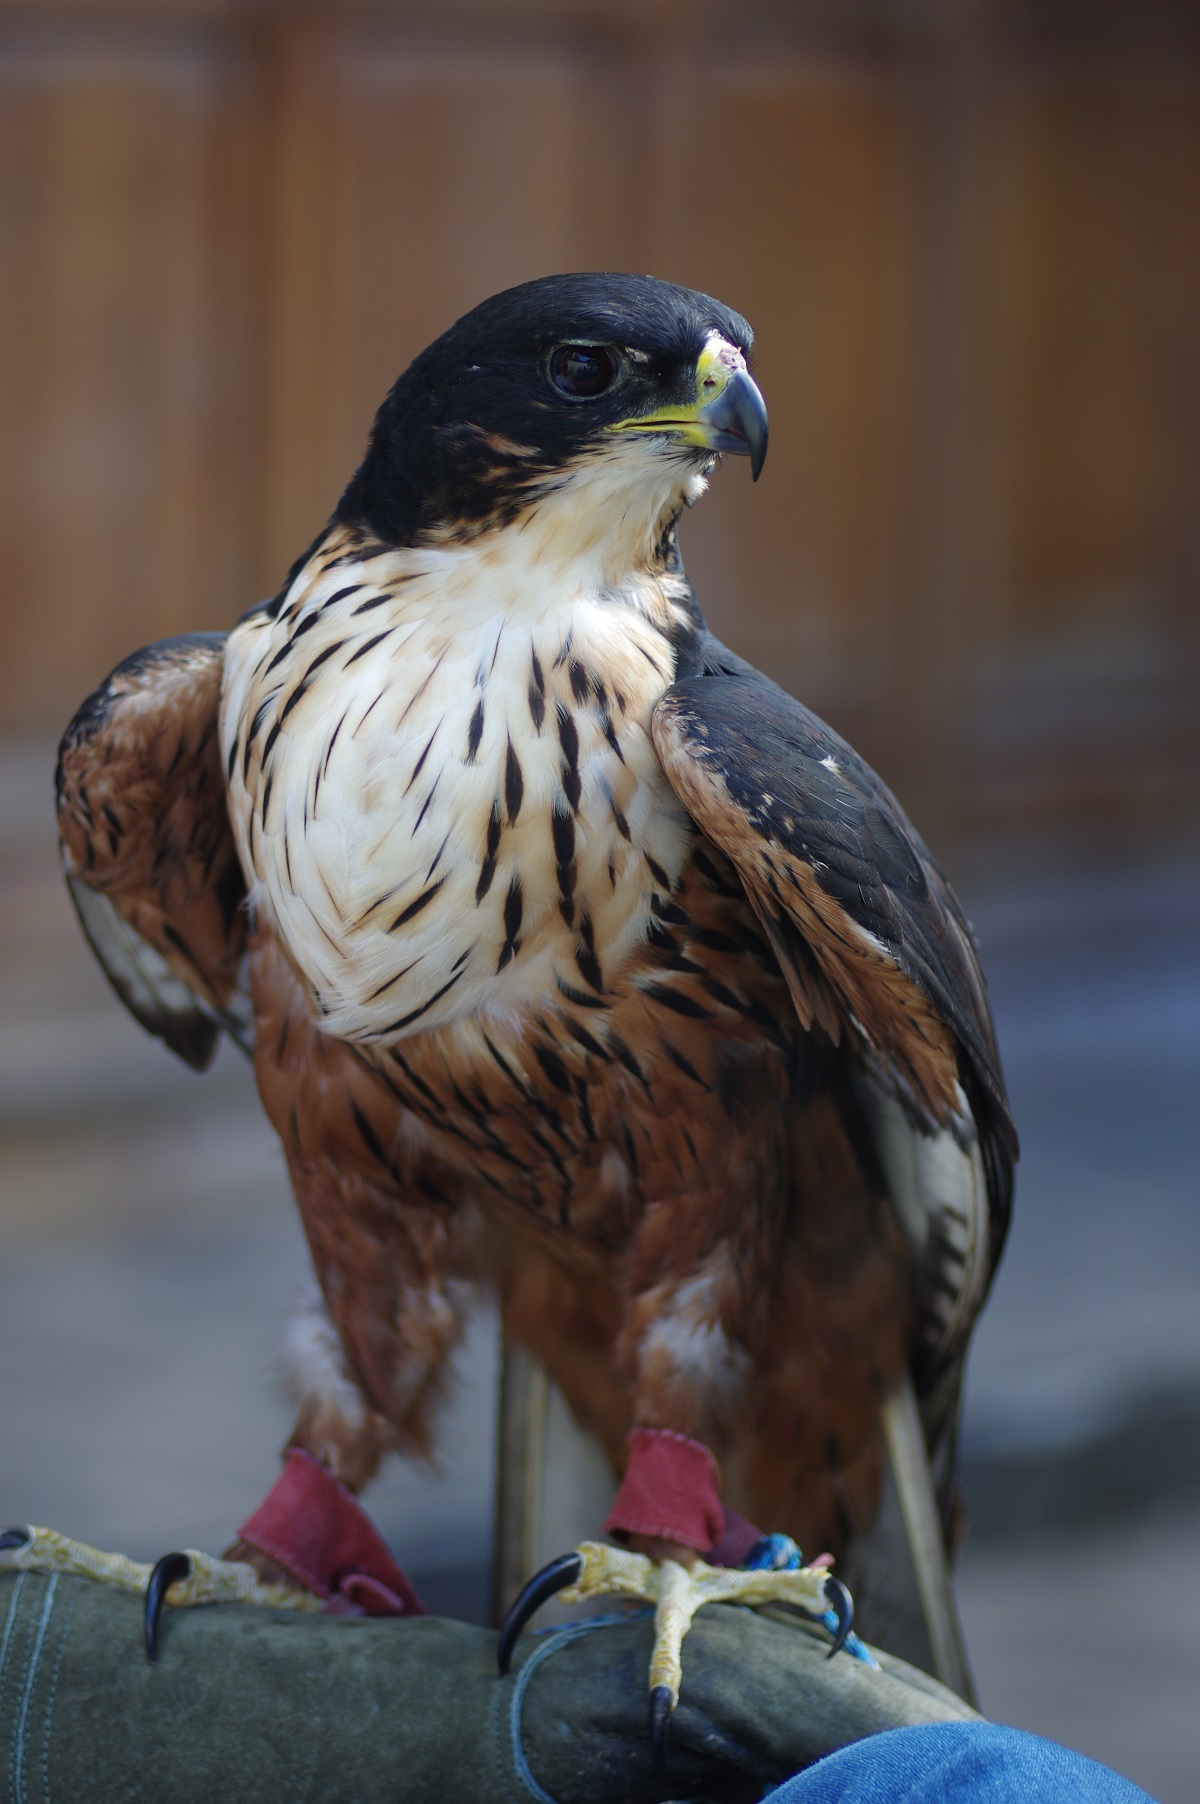 Intian Hawk Eagle